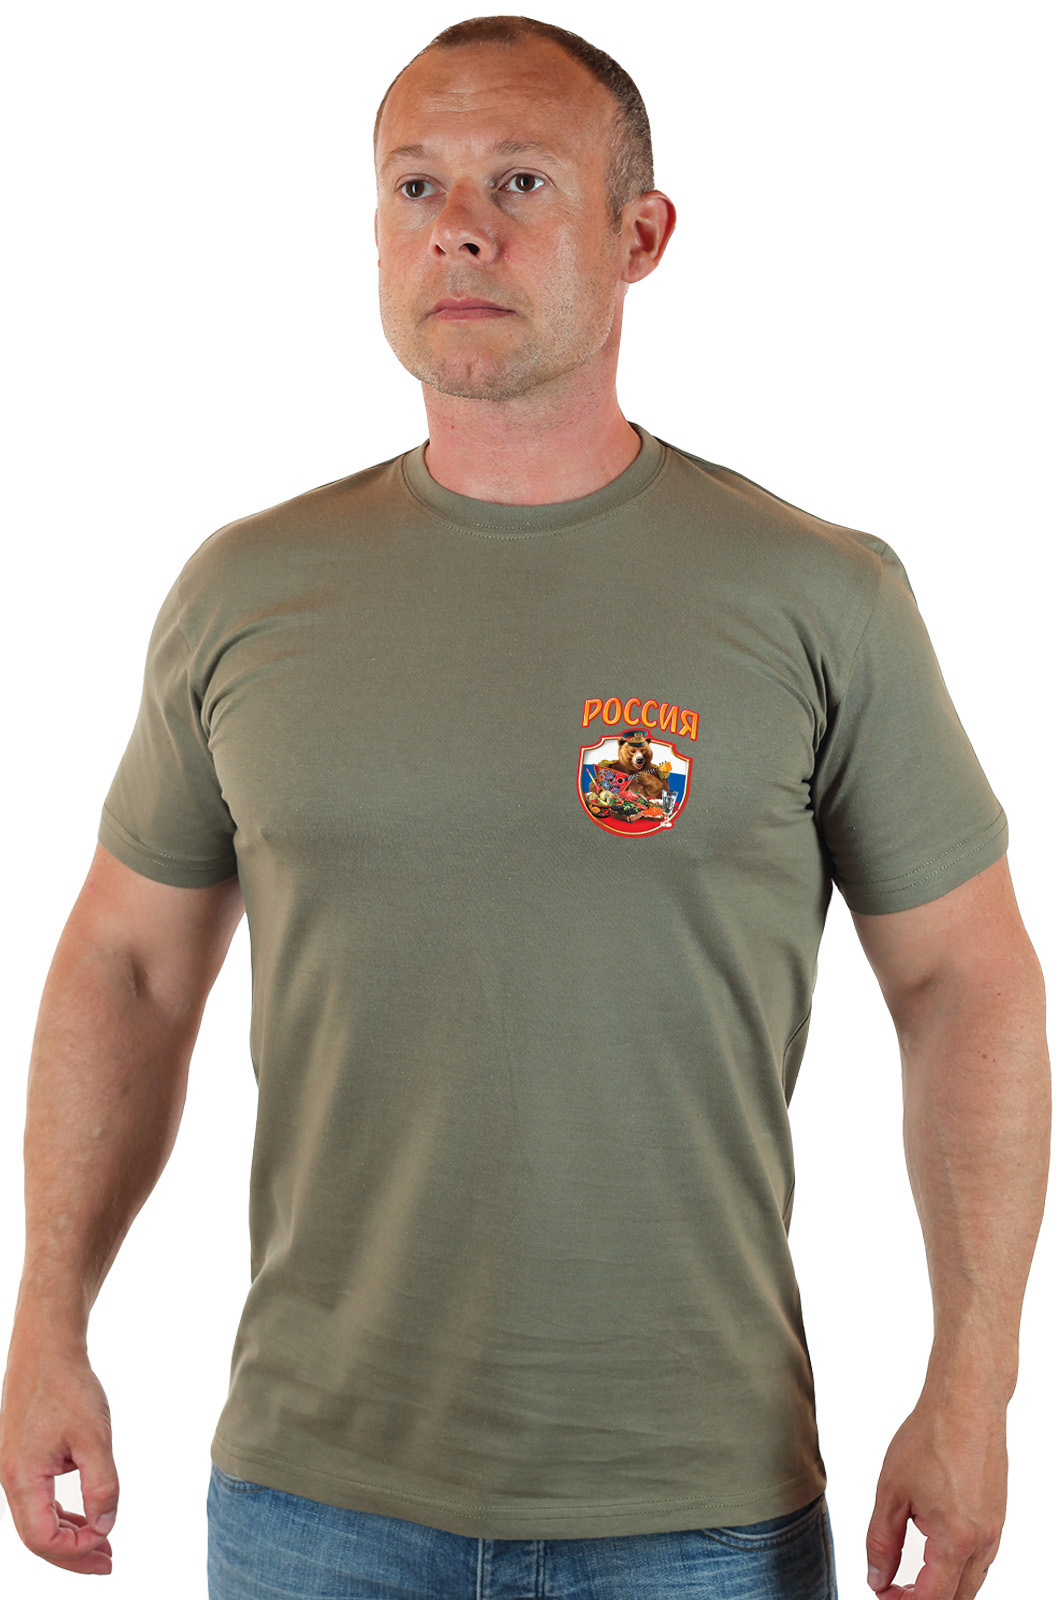 Практичная мужская футболка с патриотичной эмблемой 